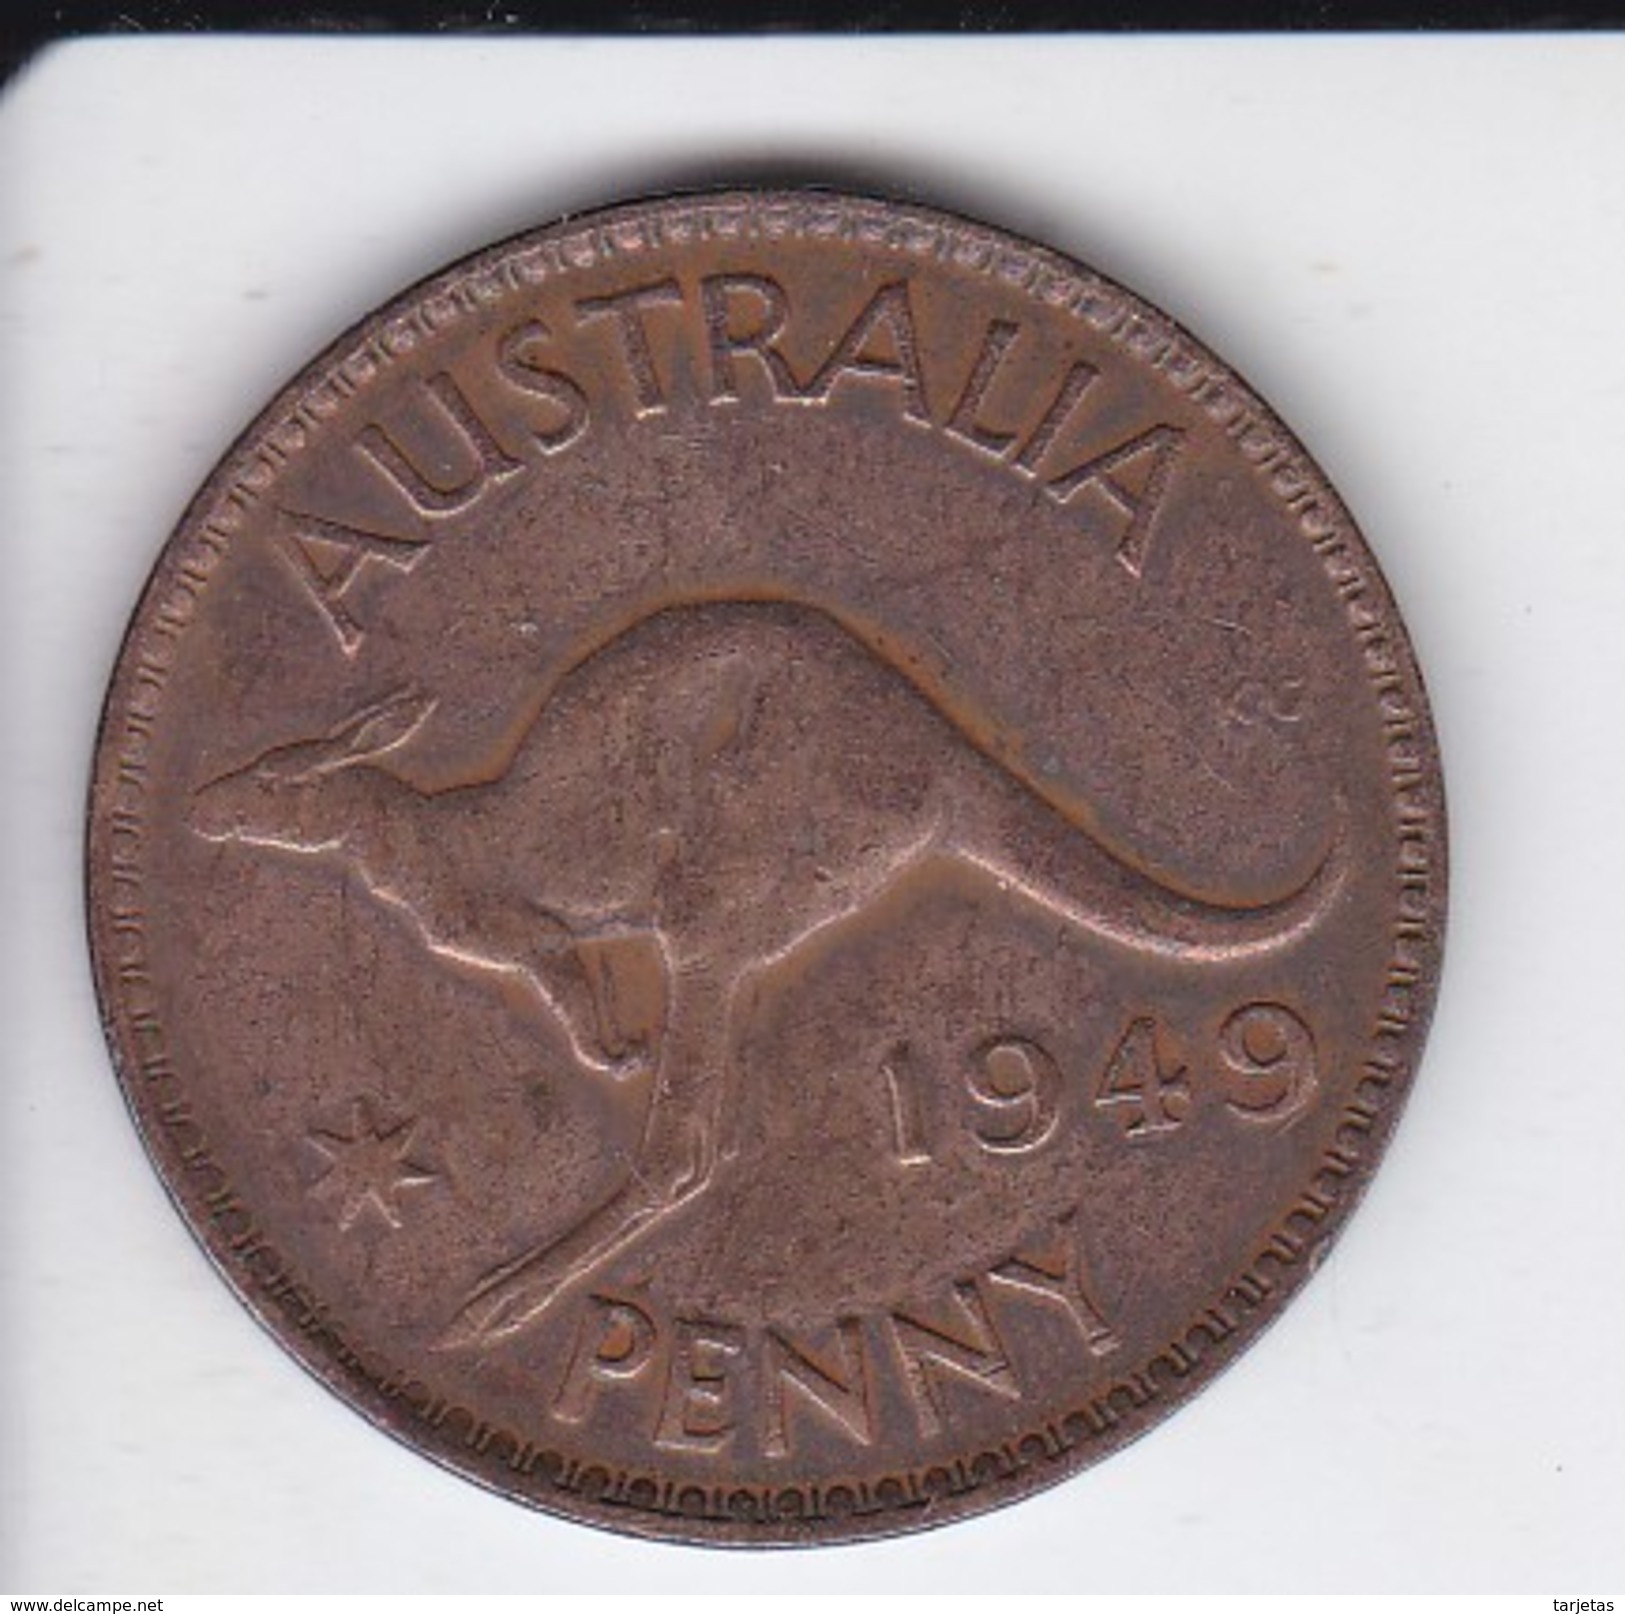 MONEDA DE AUSTRALIA DE 1 PENNY DEL AÑO 1949 CANGURO (KANGAROO) - Penny